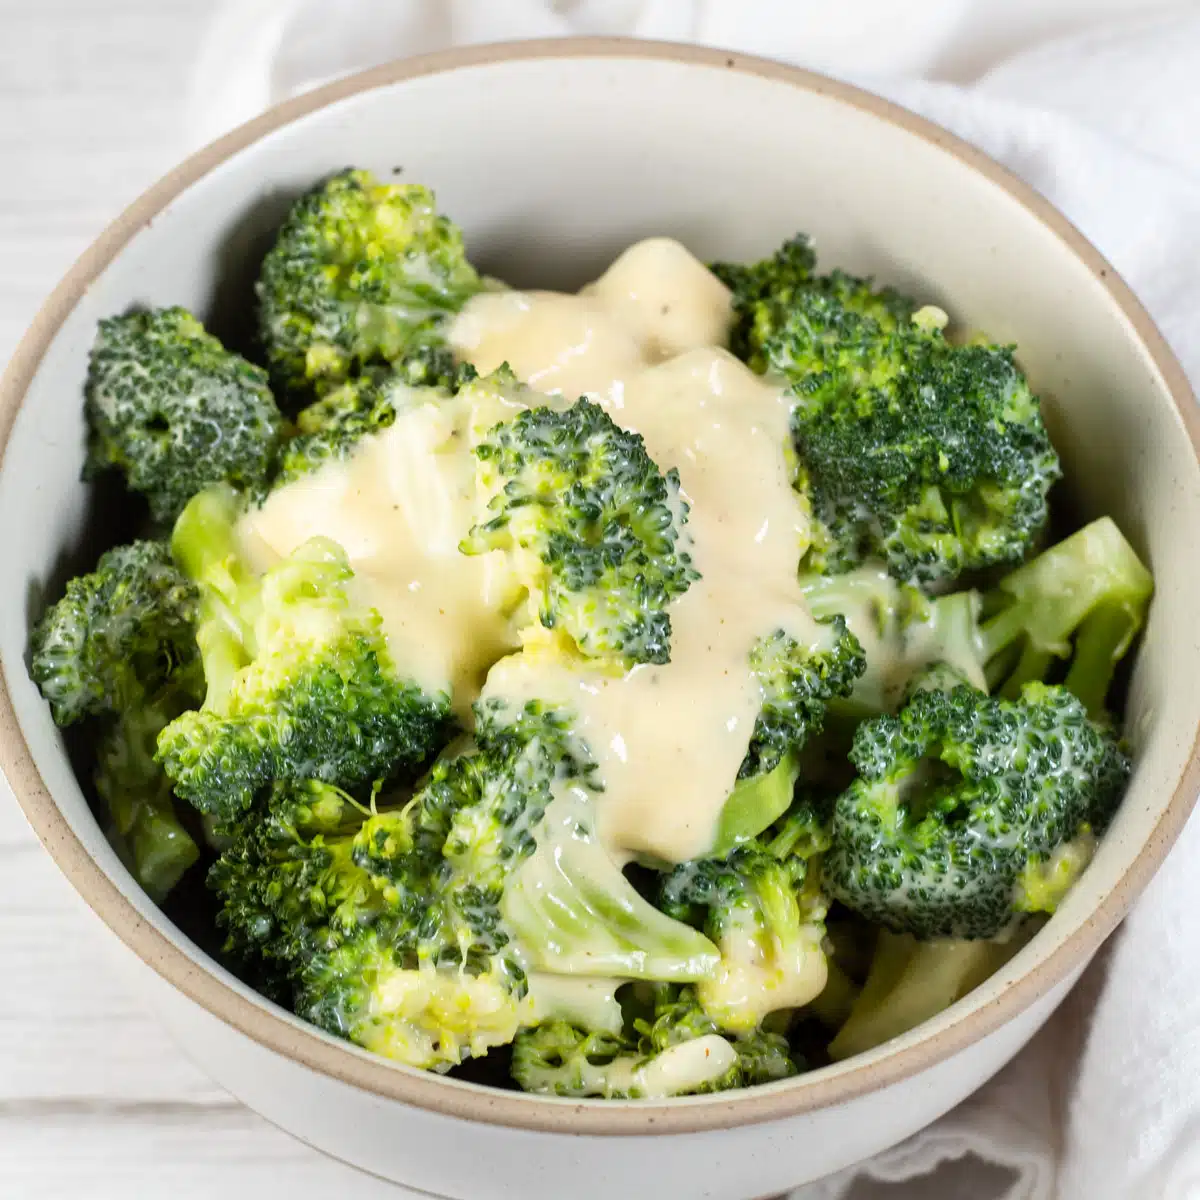 Čtvercový obrázek zobrazující brokolici a sýr.